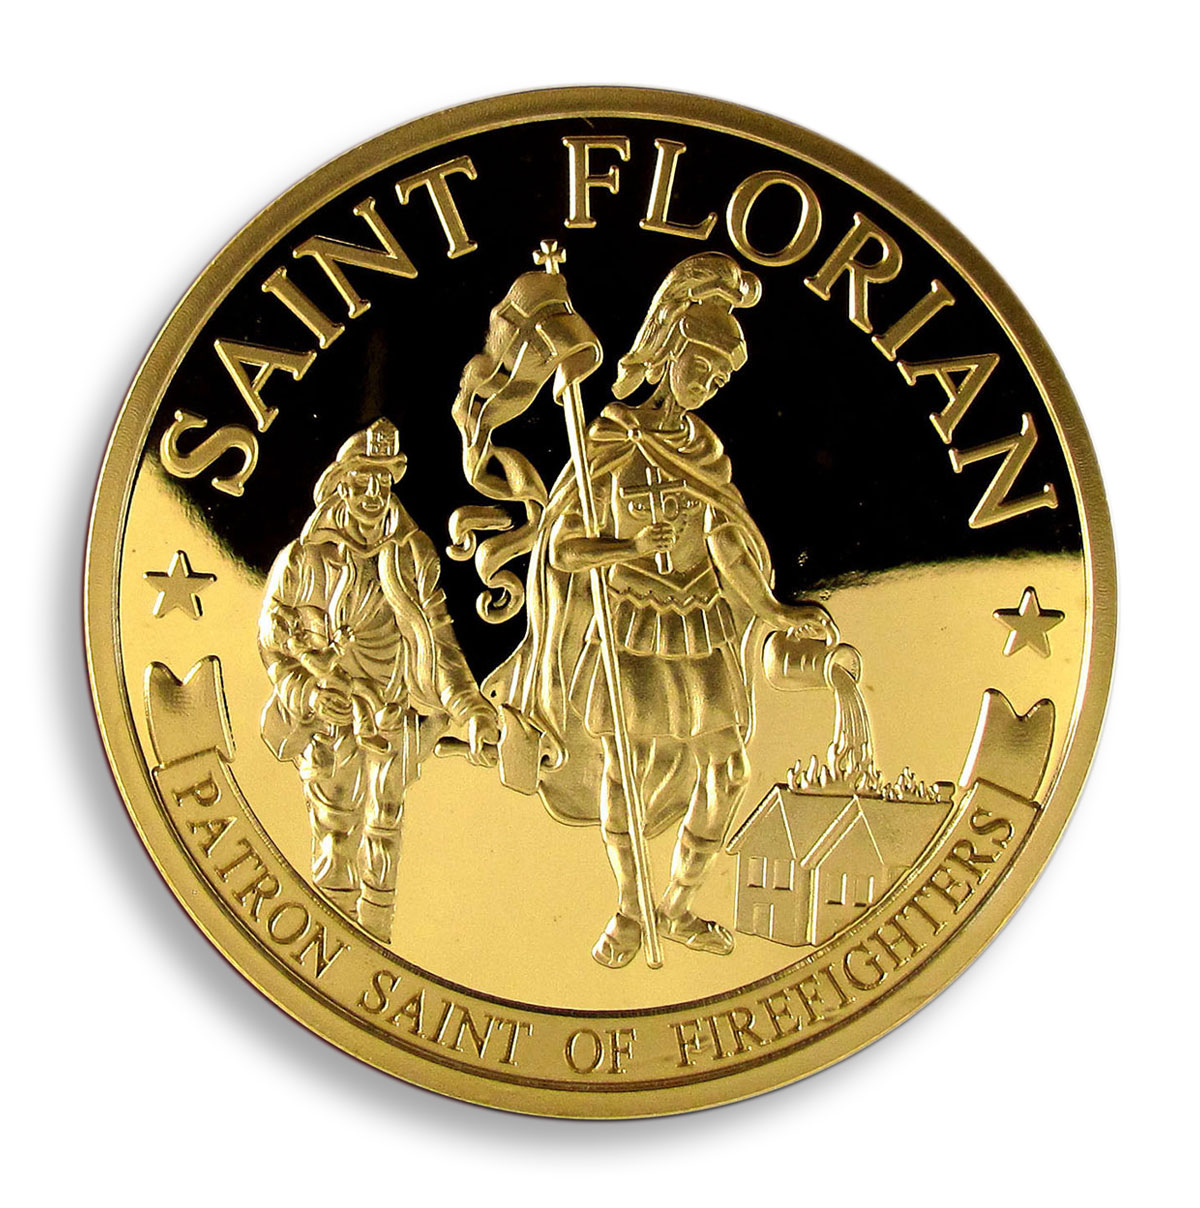 Saint Florian, Firefighter, Patron Saint of Firefighters, Firefighter's Prayer